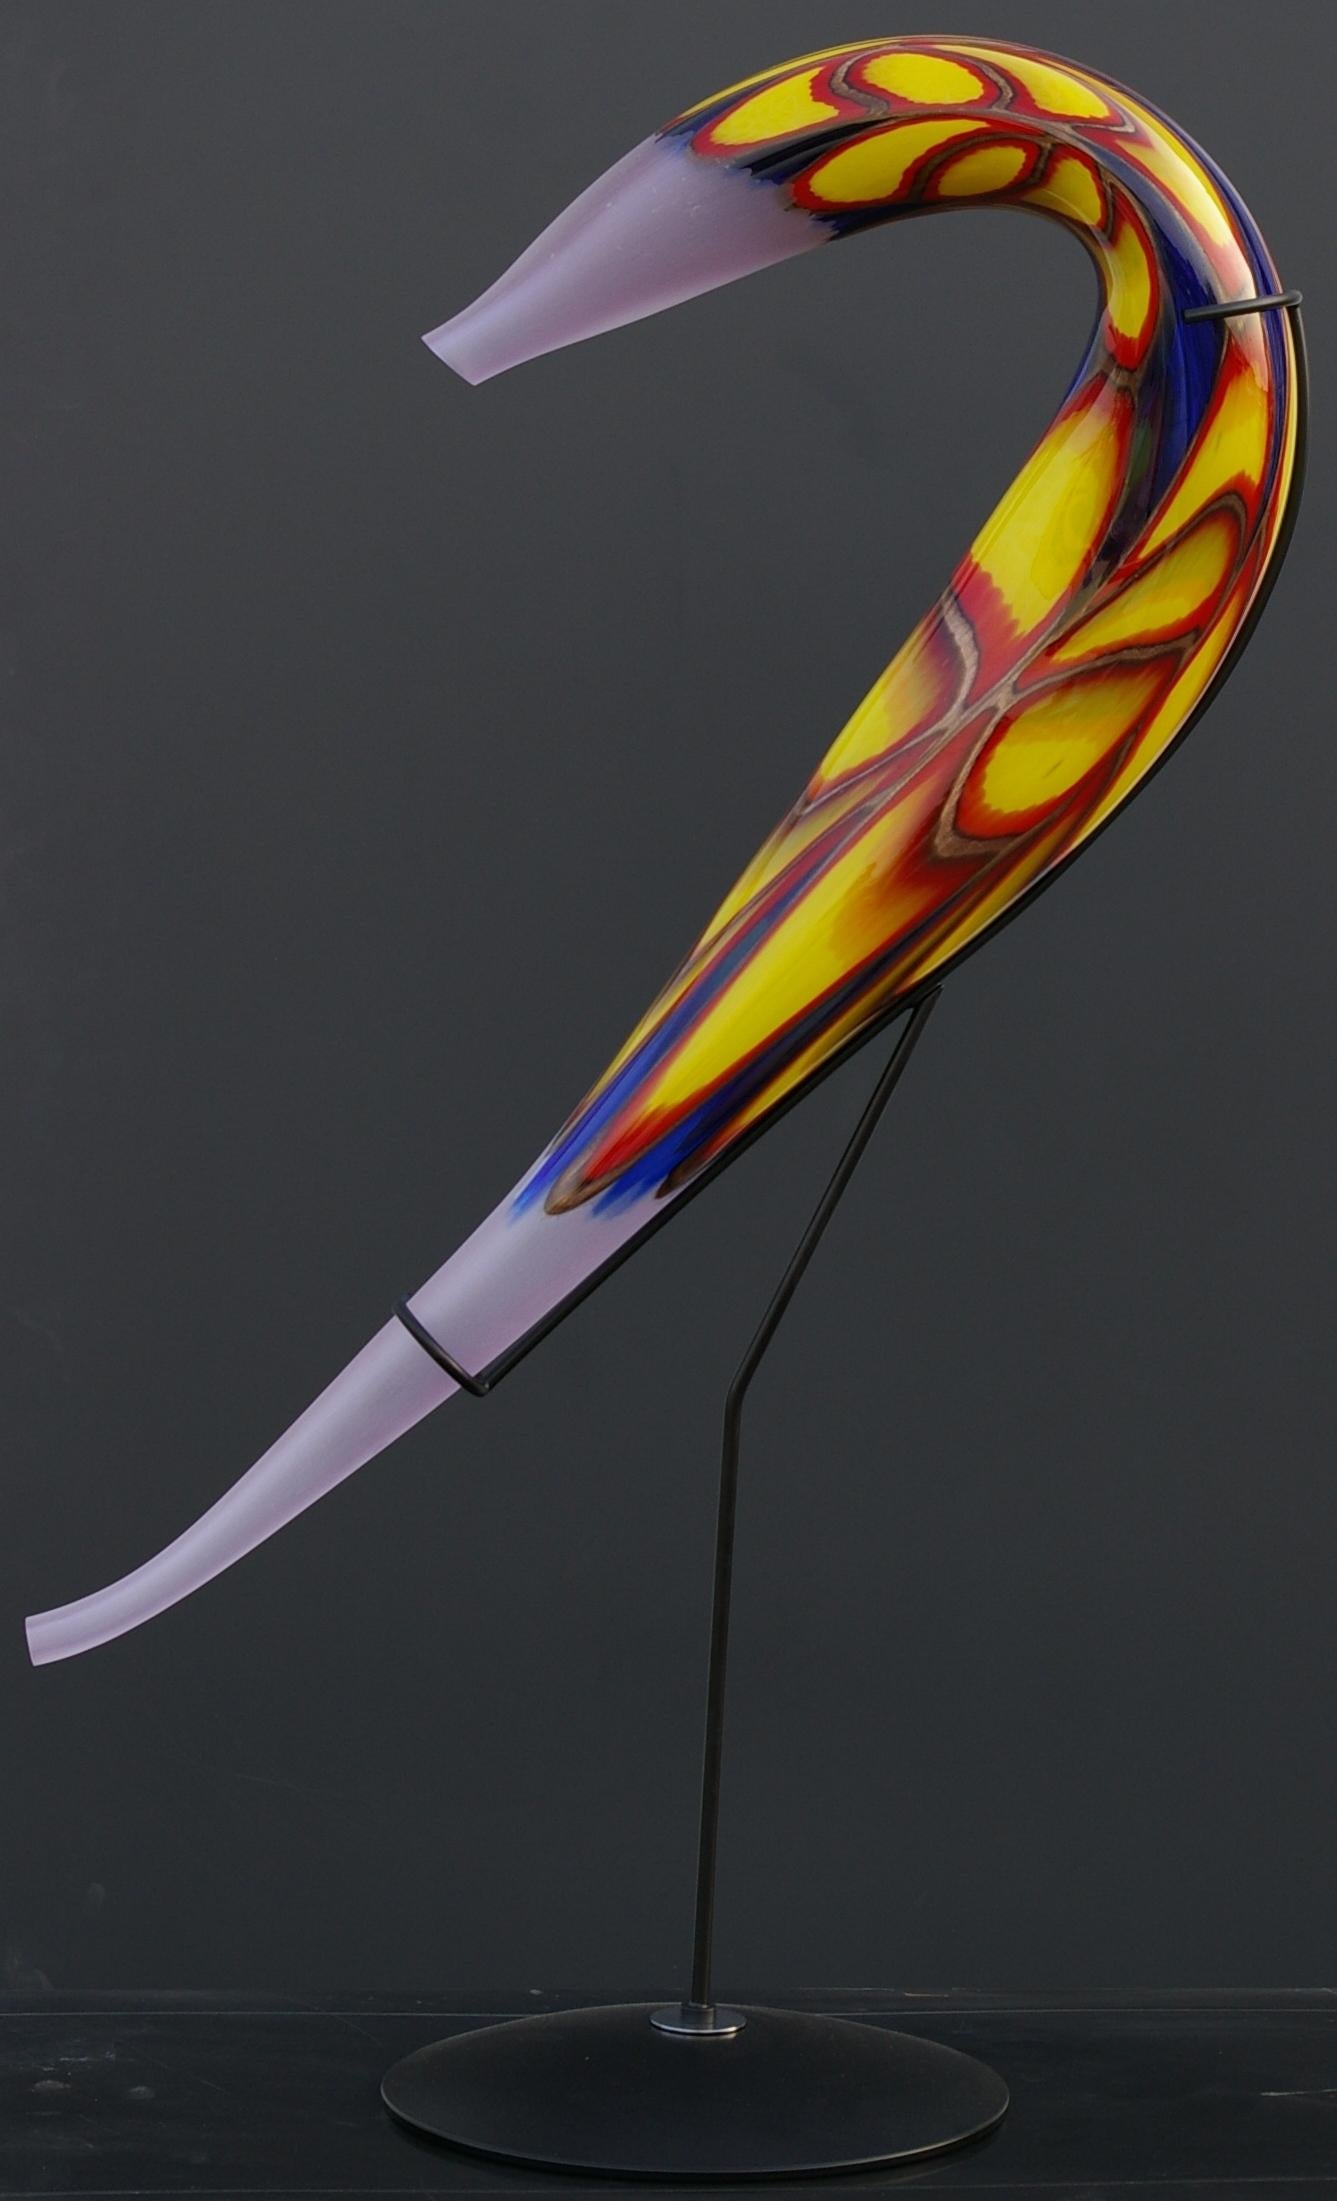 Murano künstlerisches Glas. Die künstlerische Glasskulptur aus Murano ist ein kreativer und natürlicher Ausdruck des Künstlers Eros Raffael, hergestellt aus mundgeblasenem Murano-Glas von Eros Raffael, in dieser Skulptur sind sie in perfekte